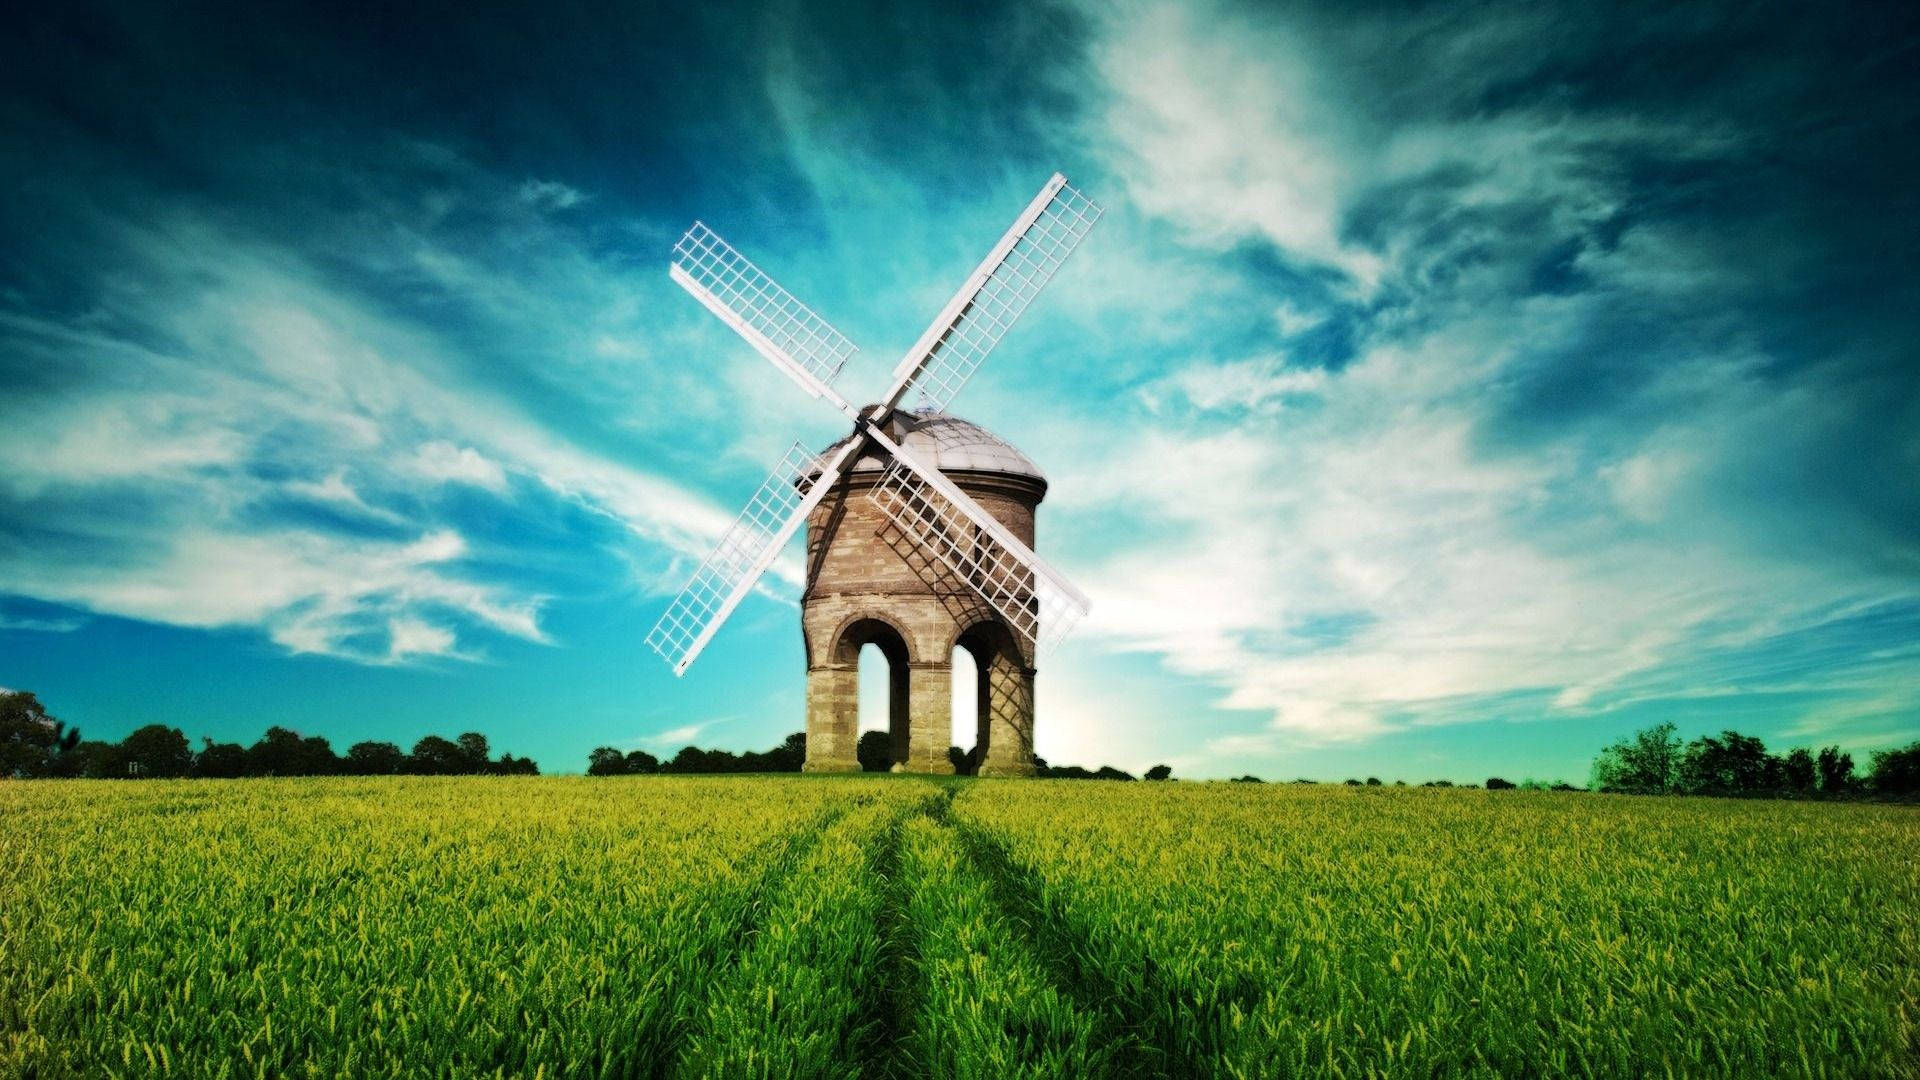 Windmill In Grass Field